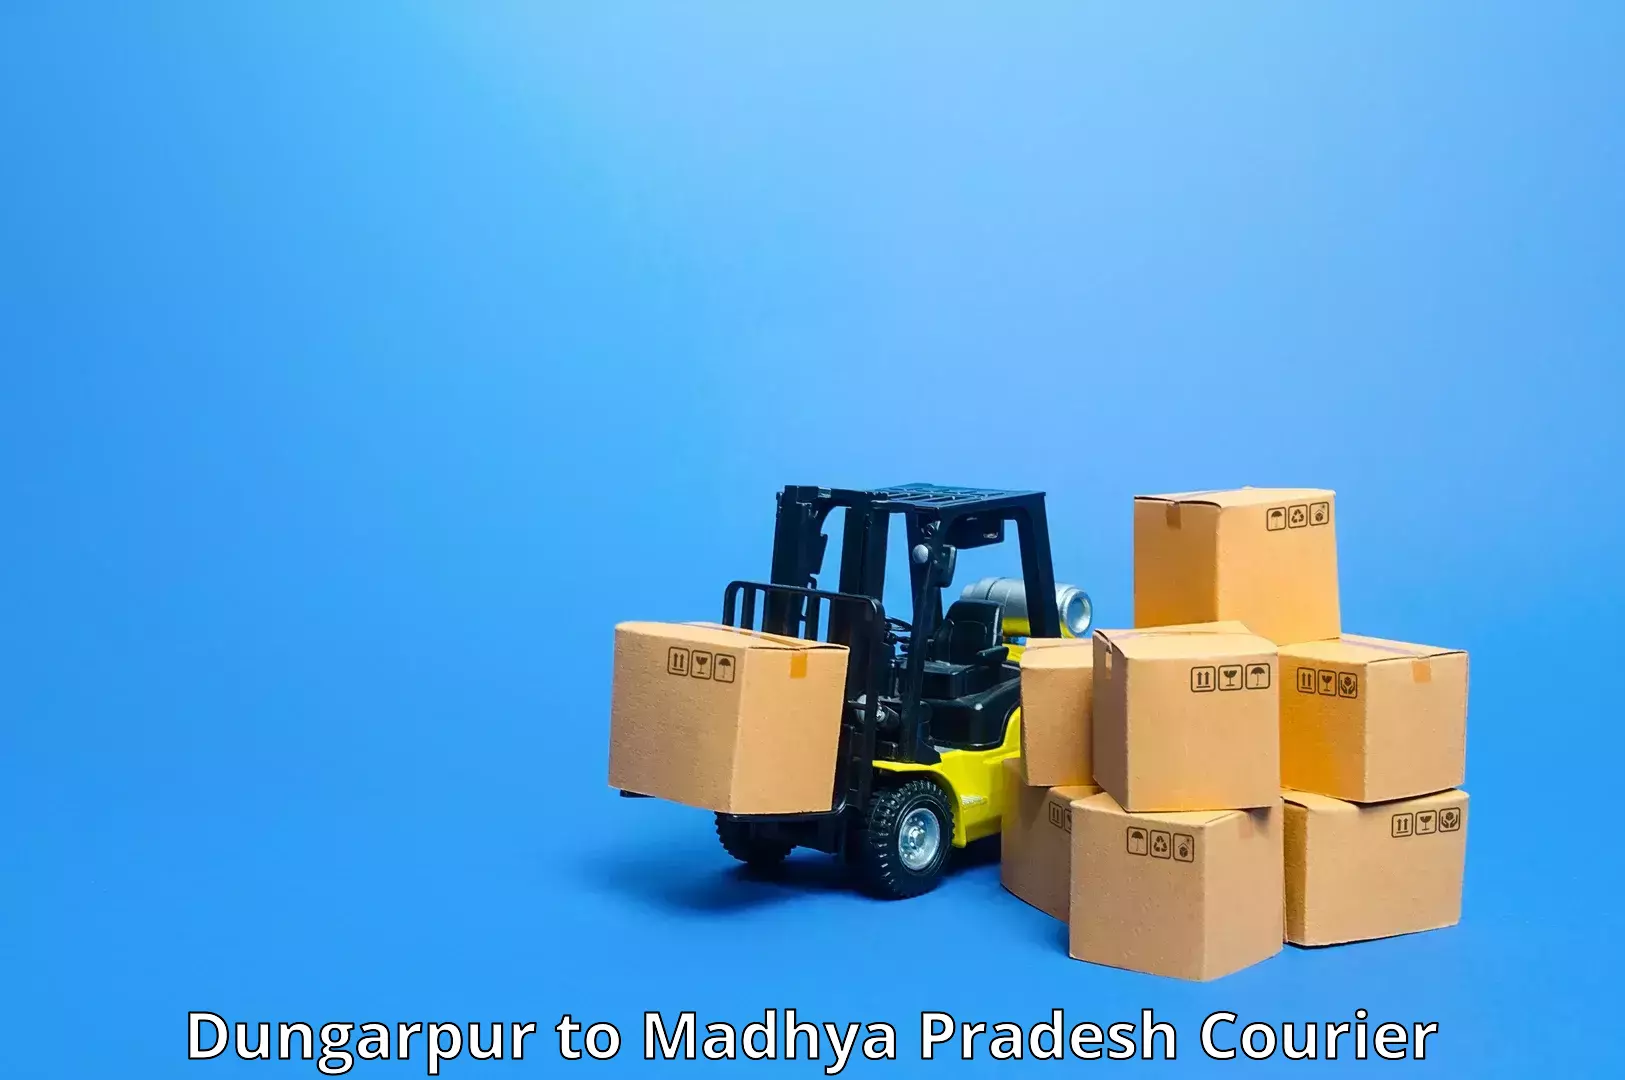 Courier service comparison Dungarpur to Khajuraho